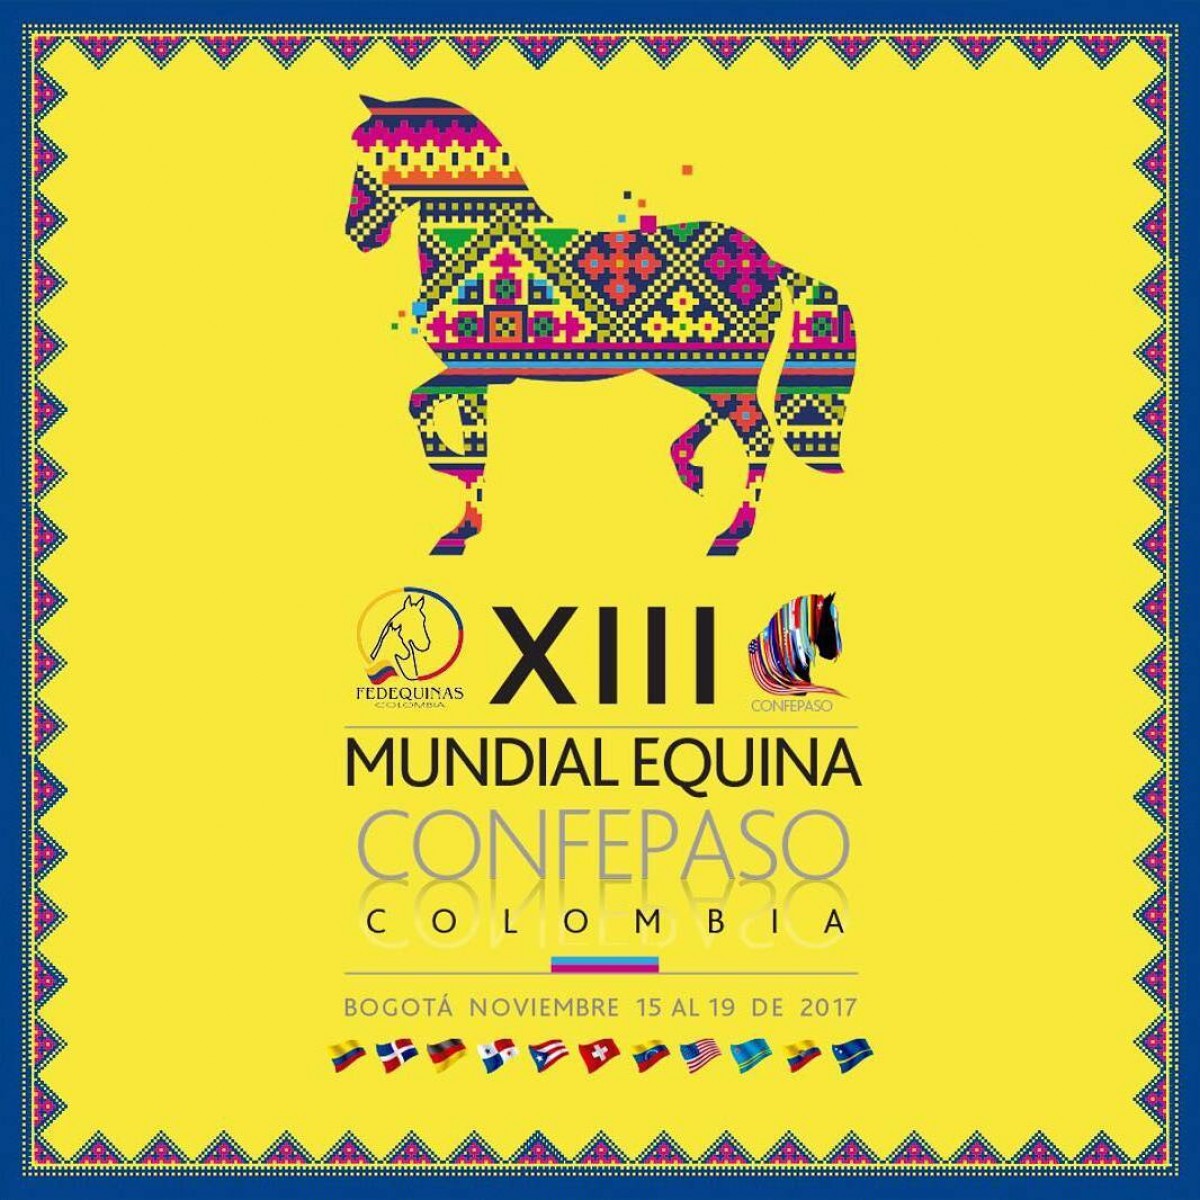 COMUNICADO CONFEPASO XIII MUNDIAL EQUINA 2017